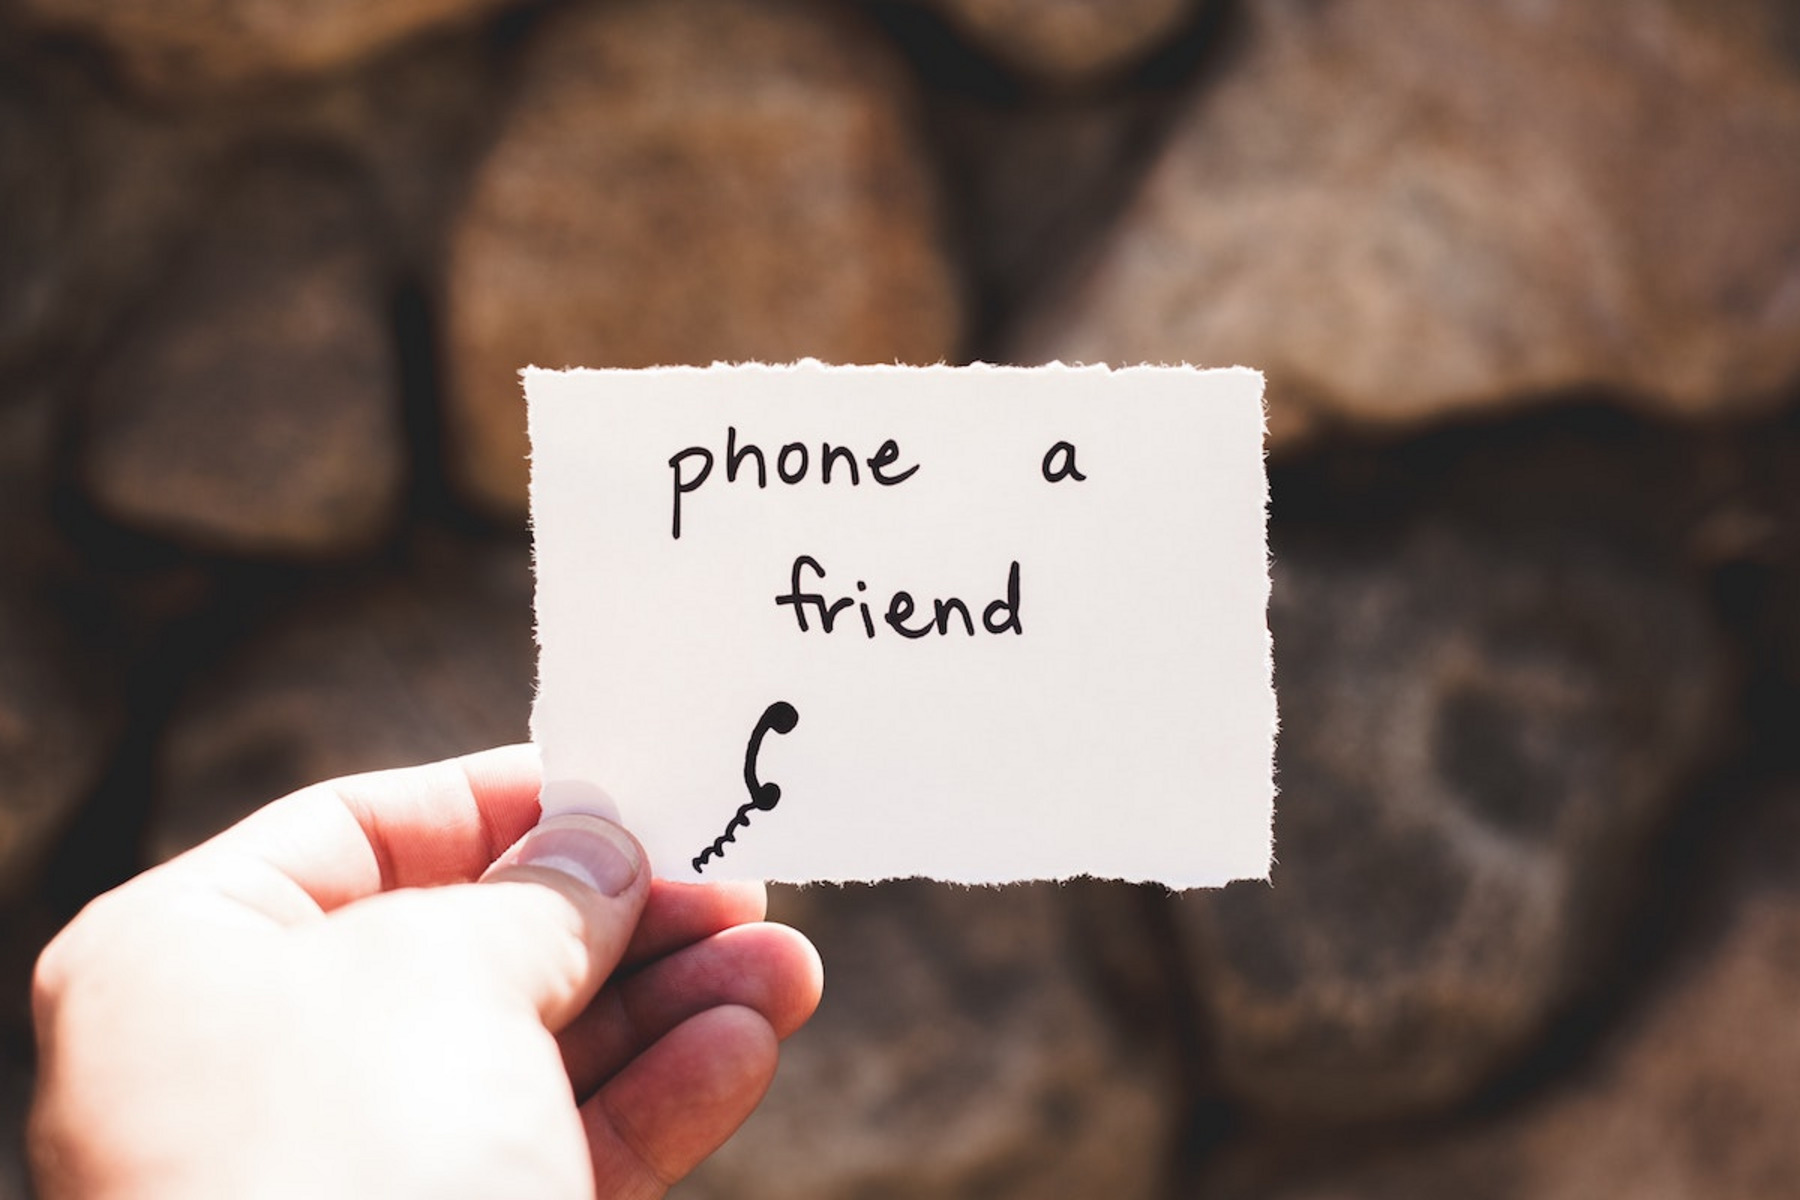 Eine Person hält einen Zettel mit dem Text "phone a friend".